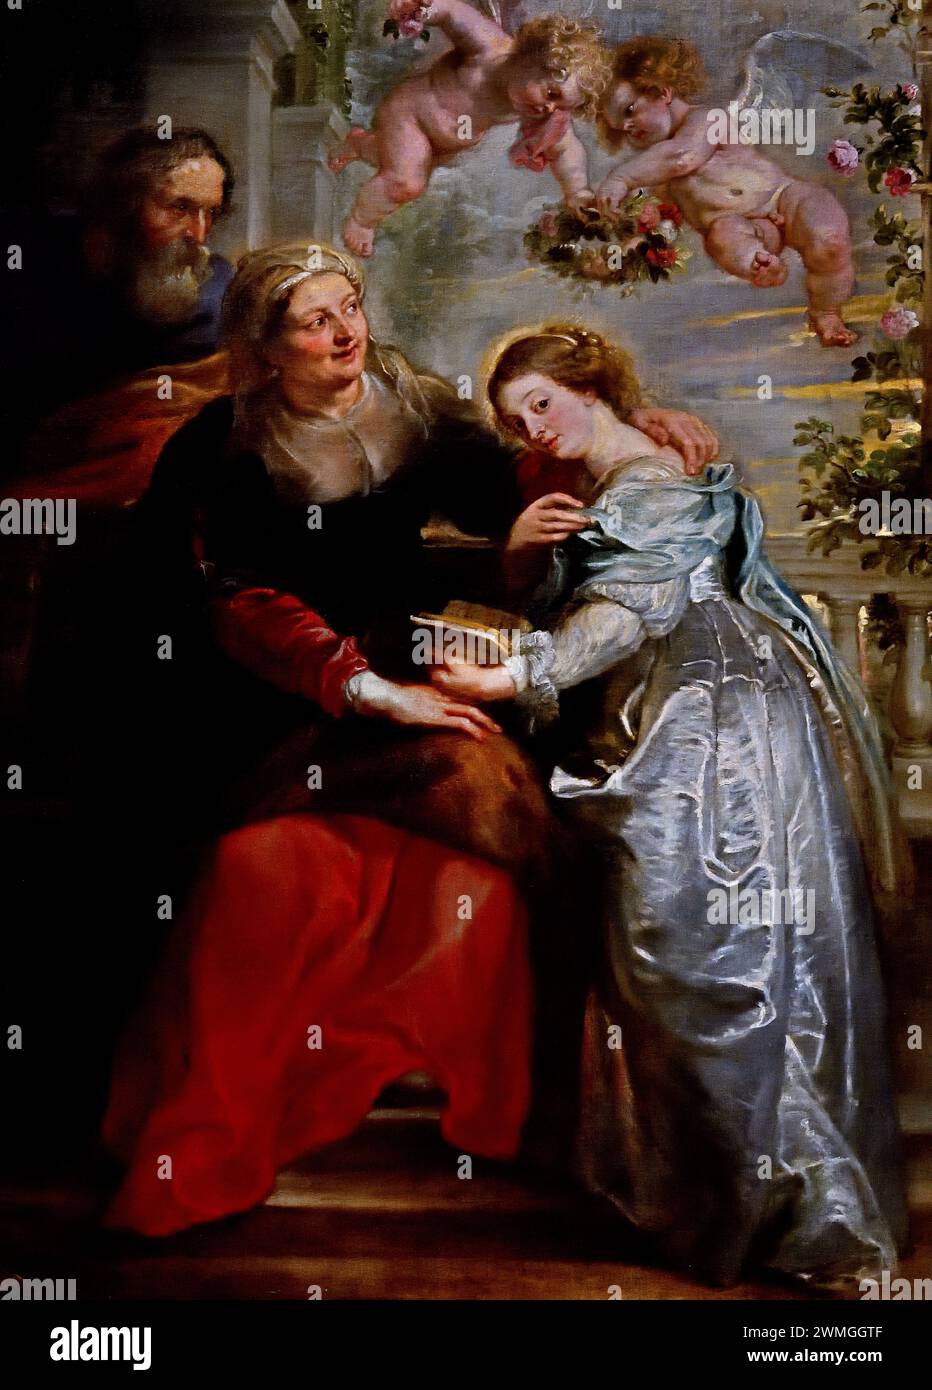 The Education of Mary 1630-1635 di Peter Paul Rubens.(1577-1640). Artista e diplomatico fiammingo, fiammingo, Museo reale barocco di Belle Arti, Anversa, Belgio, Belgio. Foto Stock